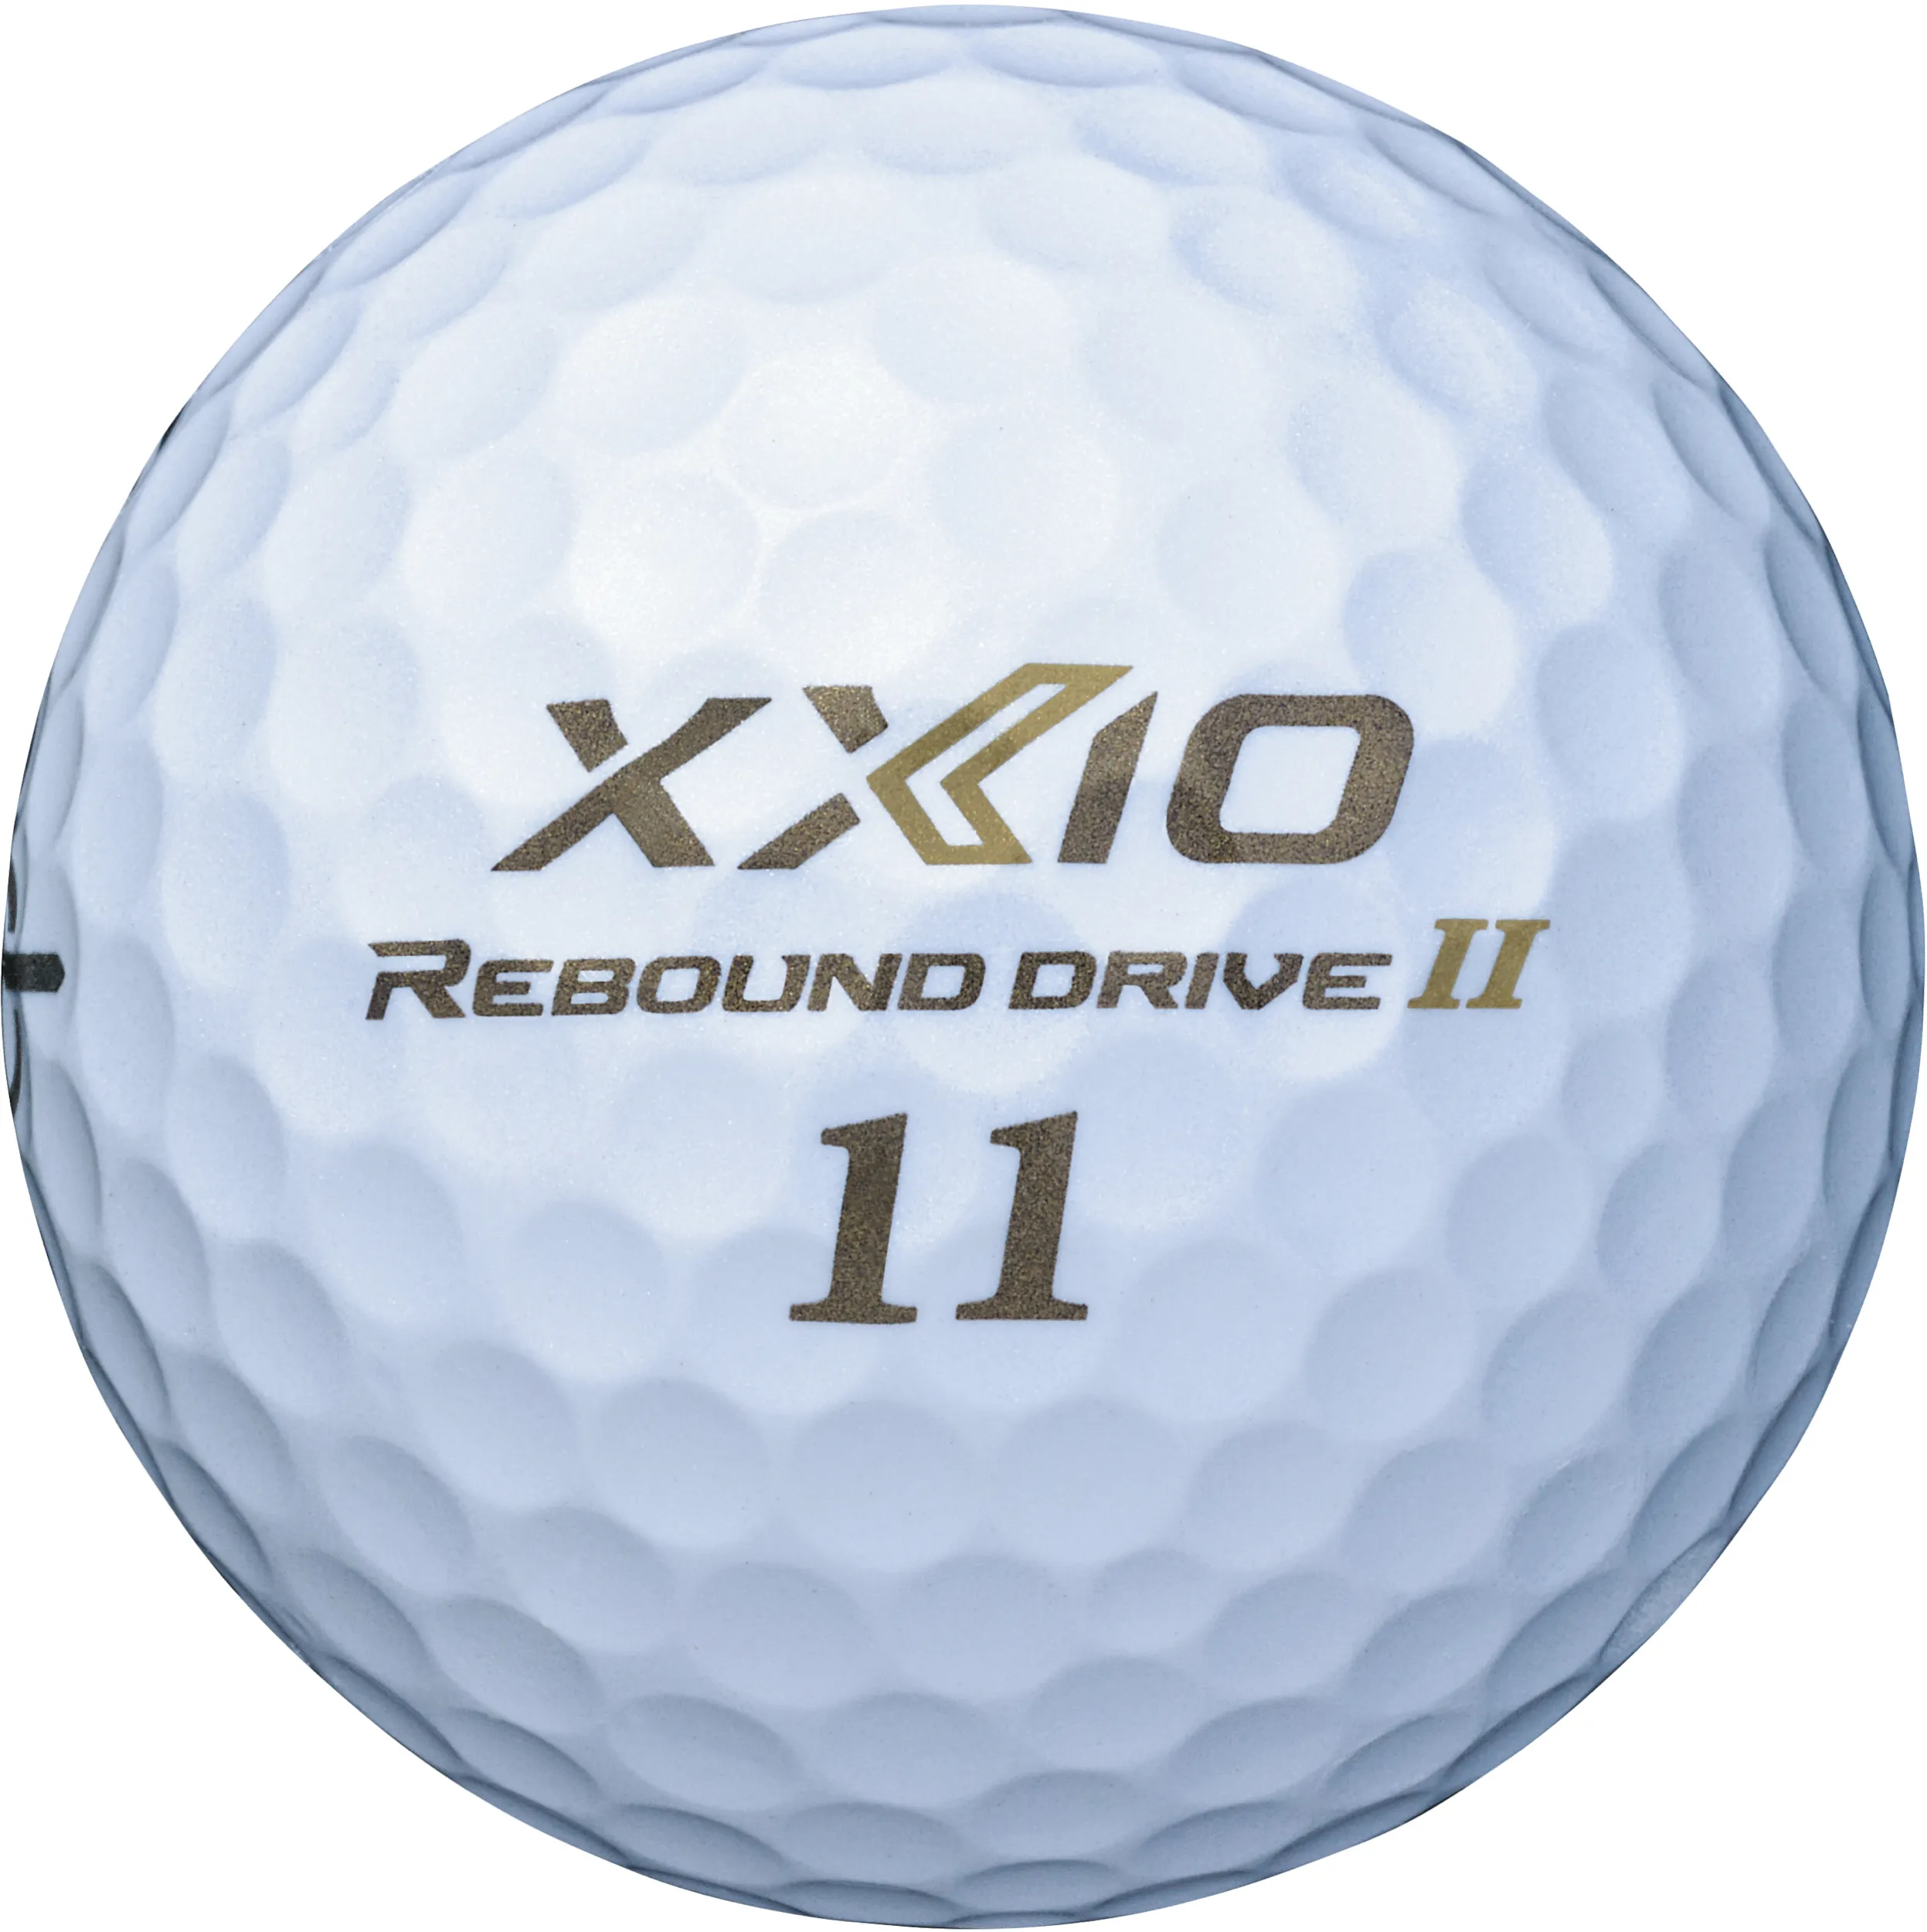 XXIO Rebound Drive II Golfbälle, weiß/hellbraun